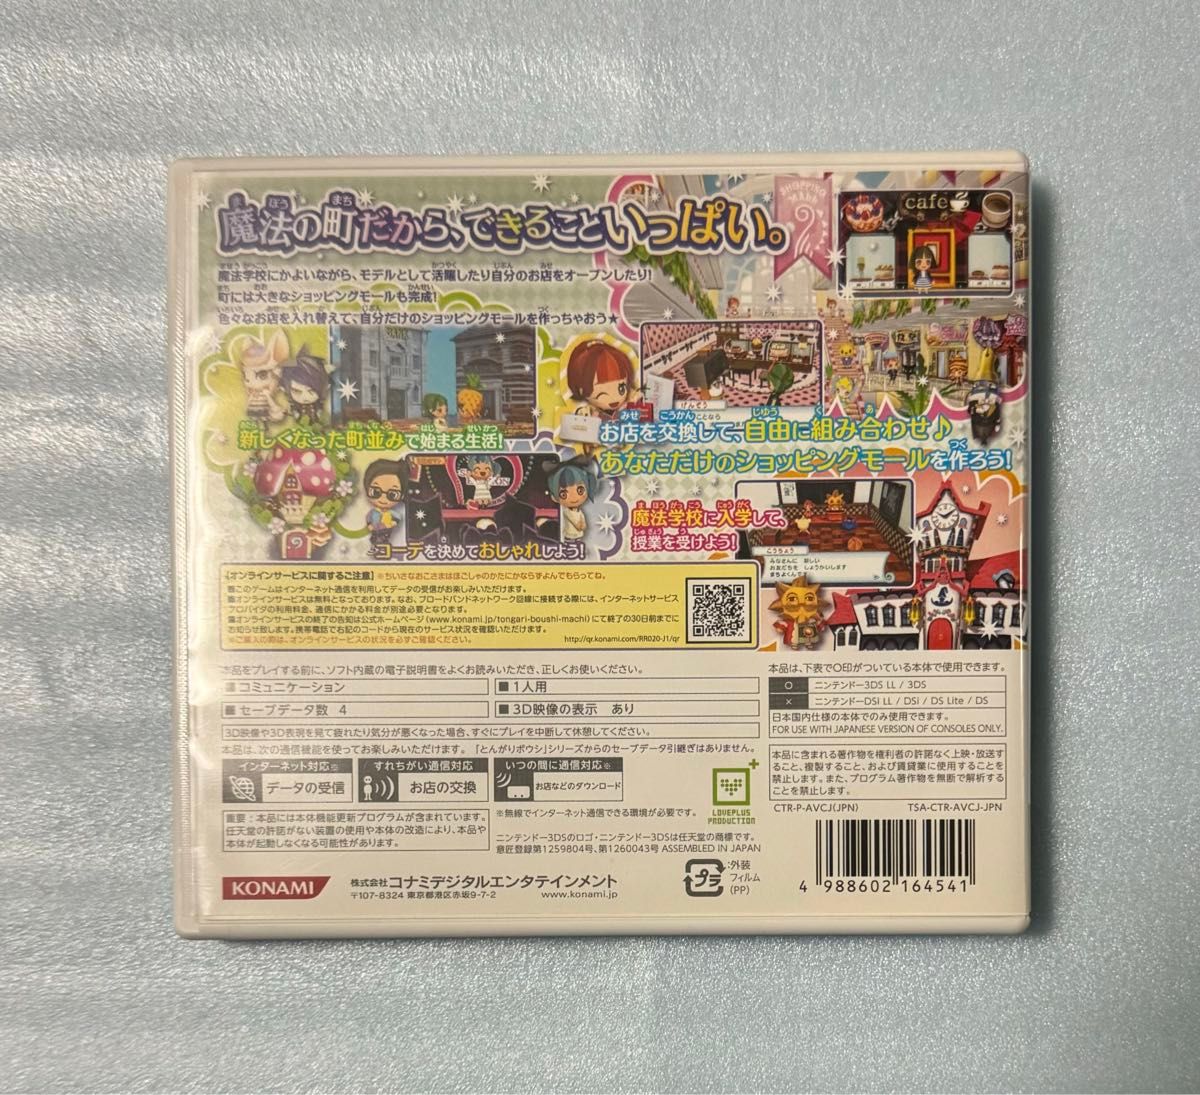 【動作確認画像あり】 3DS とんがりボウシと魔法の町 ニンテンドー 3ds 任天堂 KONAMI コナミ ゲームソフト カセット